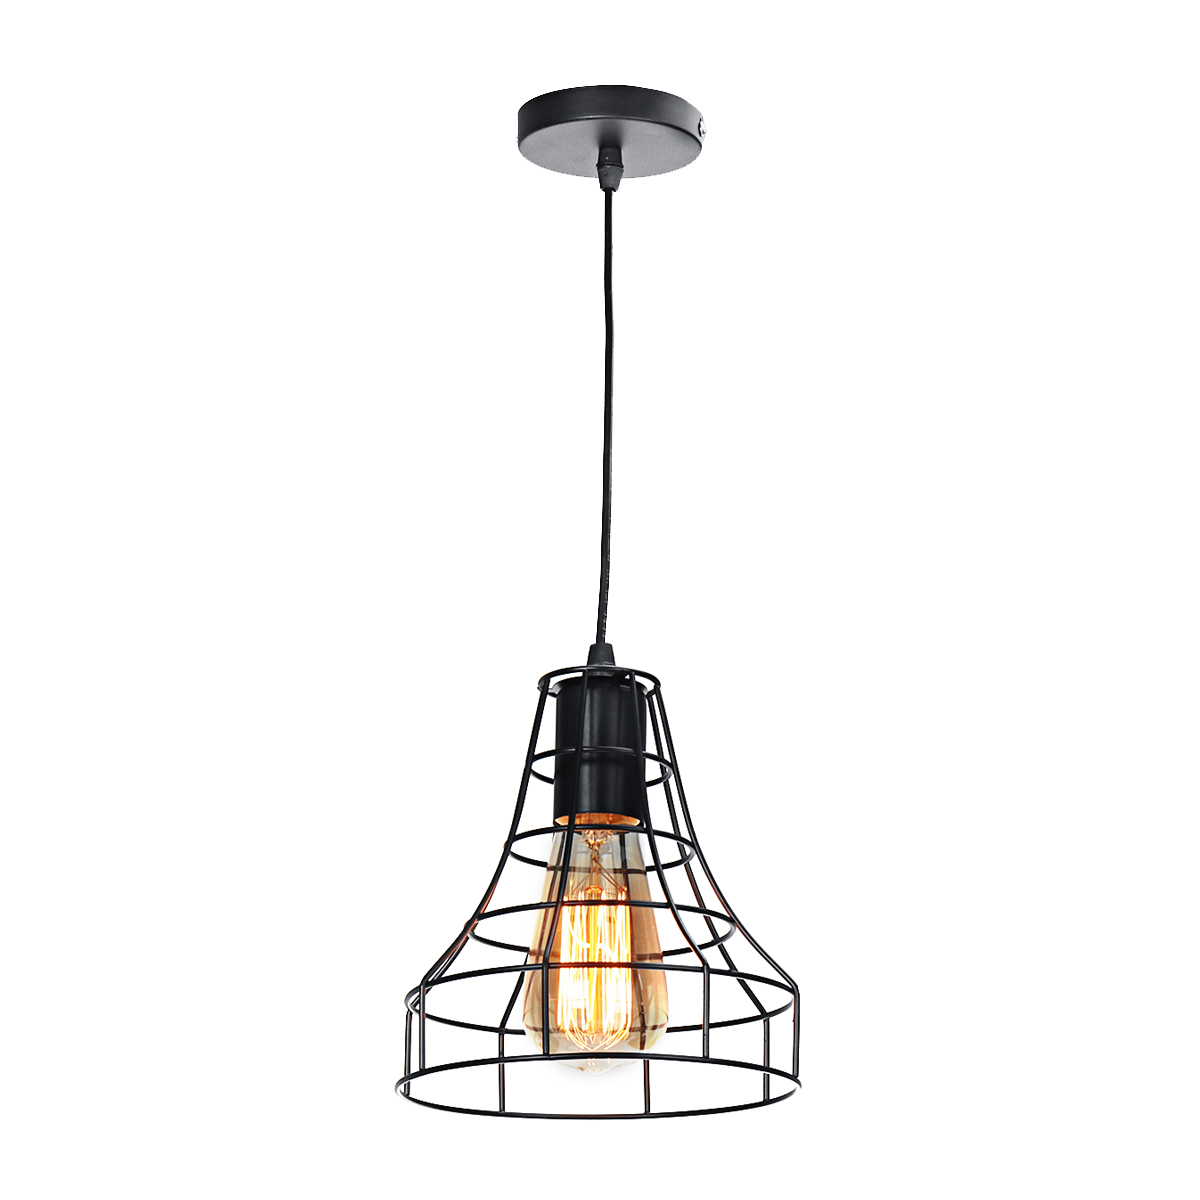 E27-Vintage-Retro-Pendant-Light-Ceiling-Lamp-Home-Dining-Fixture-Decoration-1697169-3